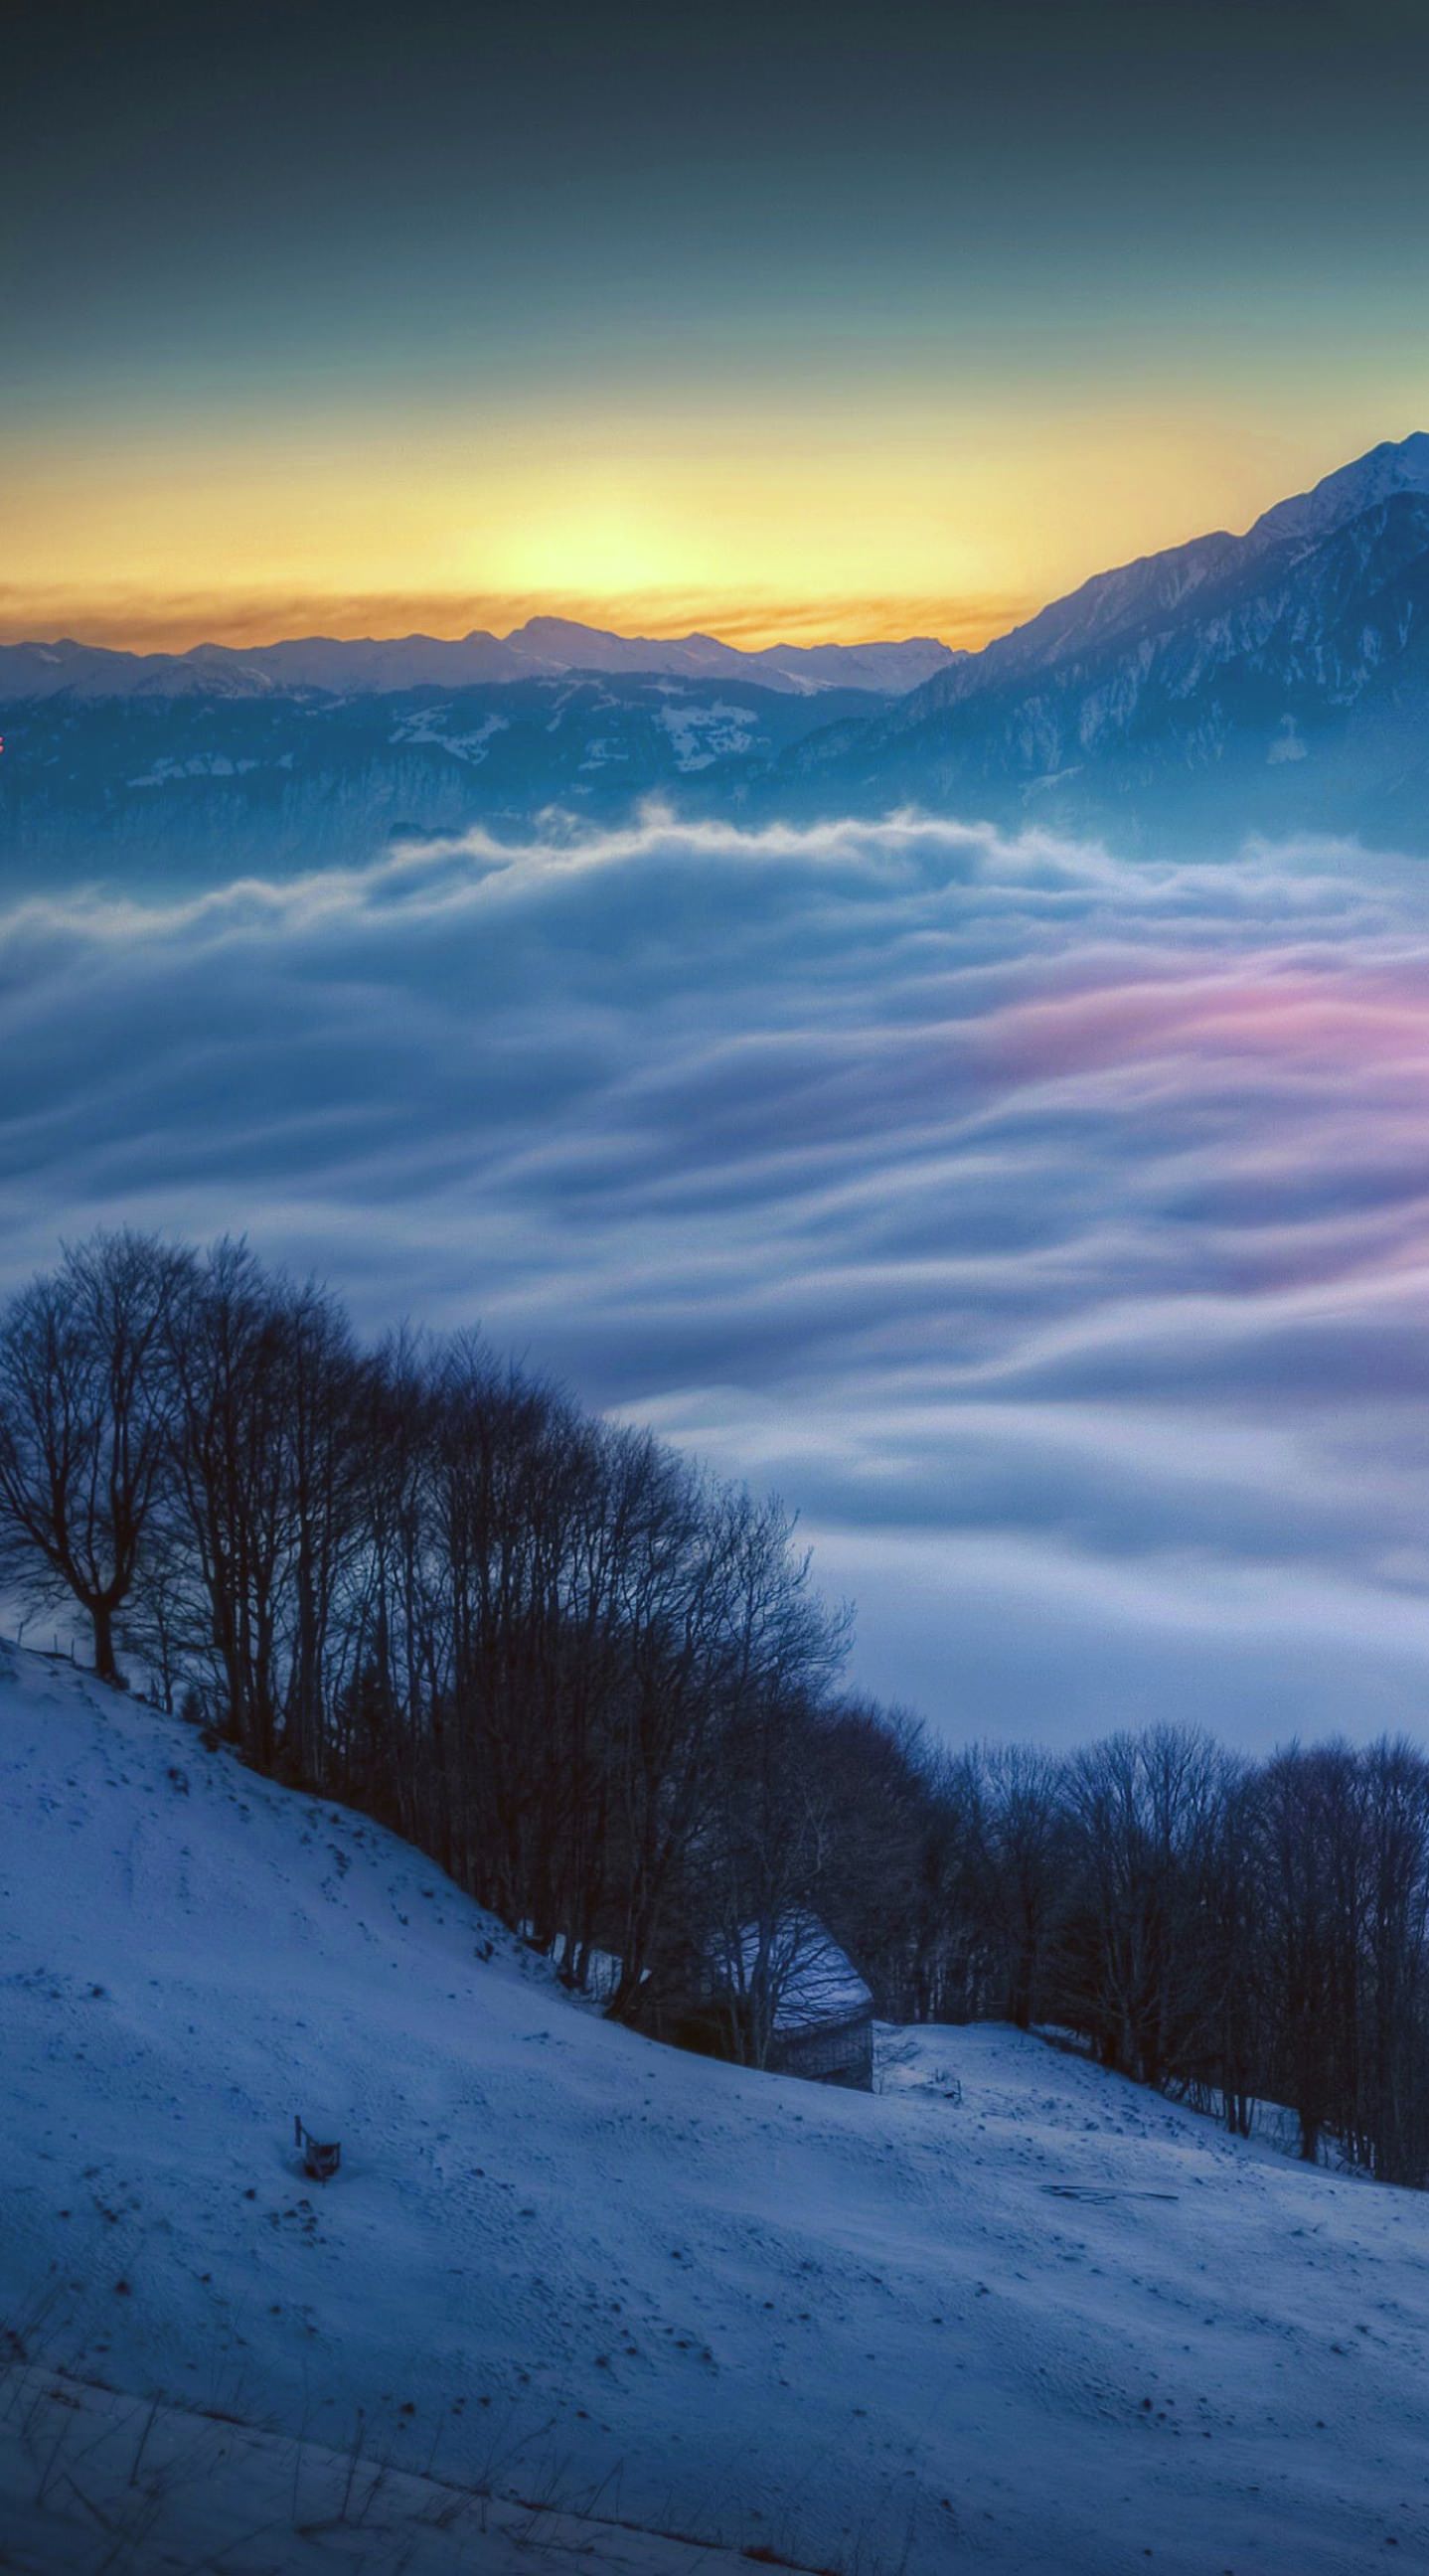 Bersalju Pemandangan Gunung Malam Wallpapersc IPhone6sPlus